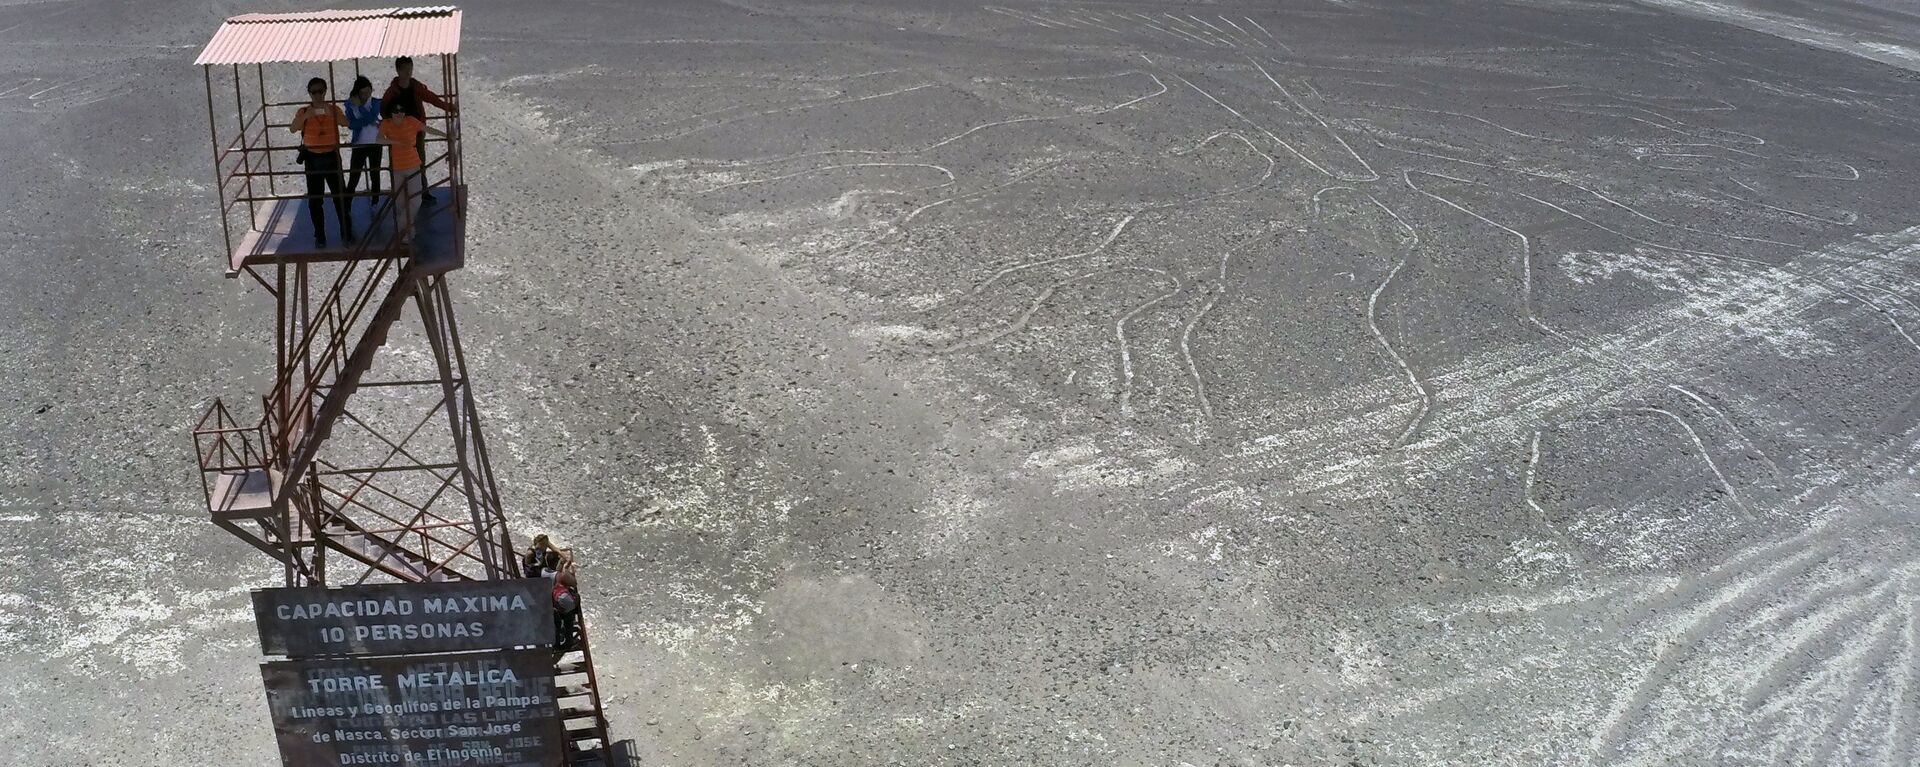 Turisti posmatraju Naska linije u Peruu. Ovi geoglifi mogu da se vide samo sa vrhova okolnih planina ili iz aviona - Sputnik Srbija, 1920, 18.10.2020